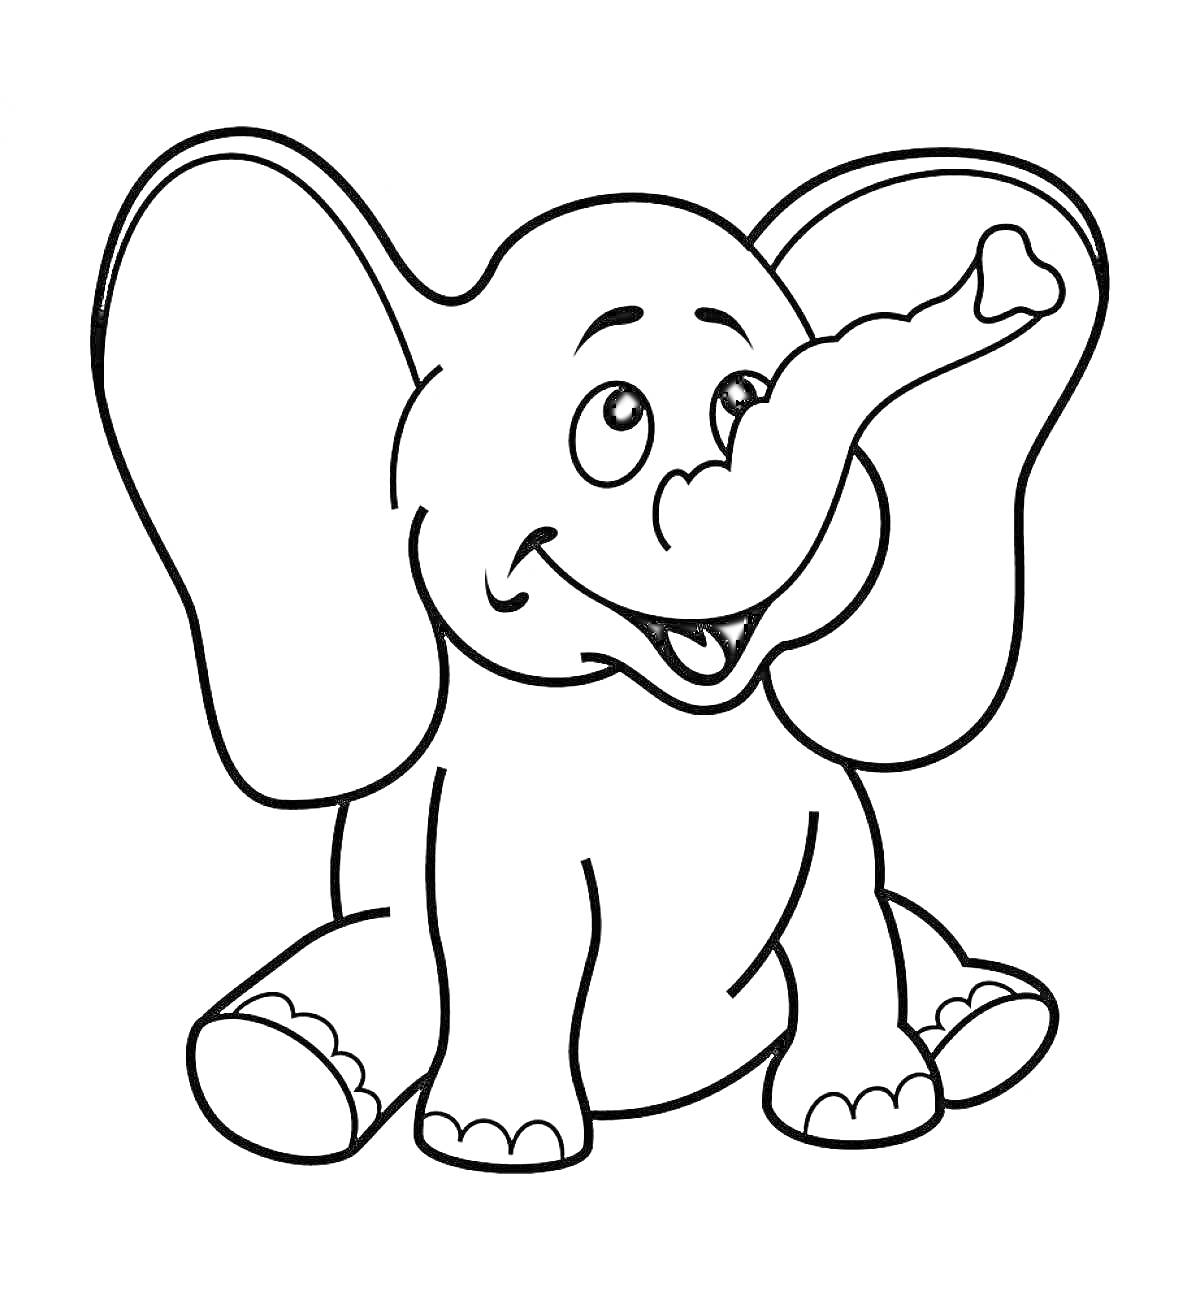 Раскраска с изображением сидящего улыбающегося слона с поднятым хоботом